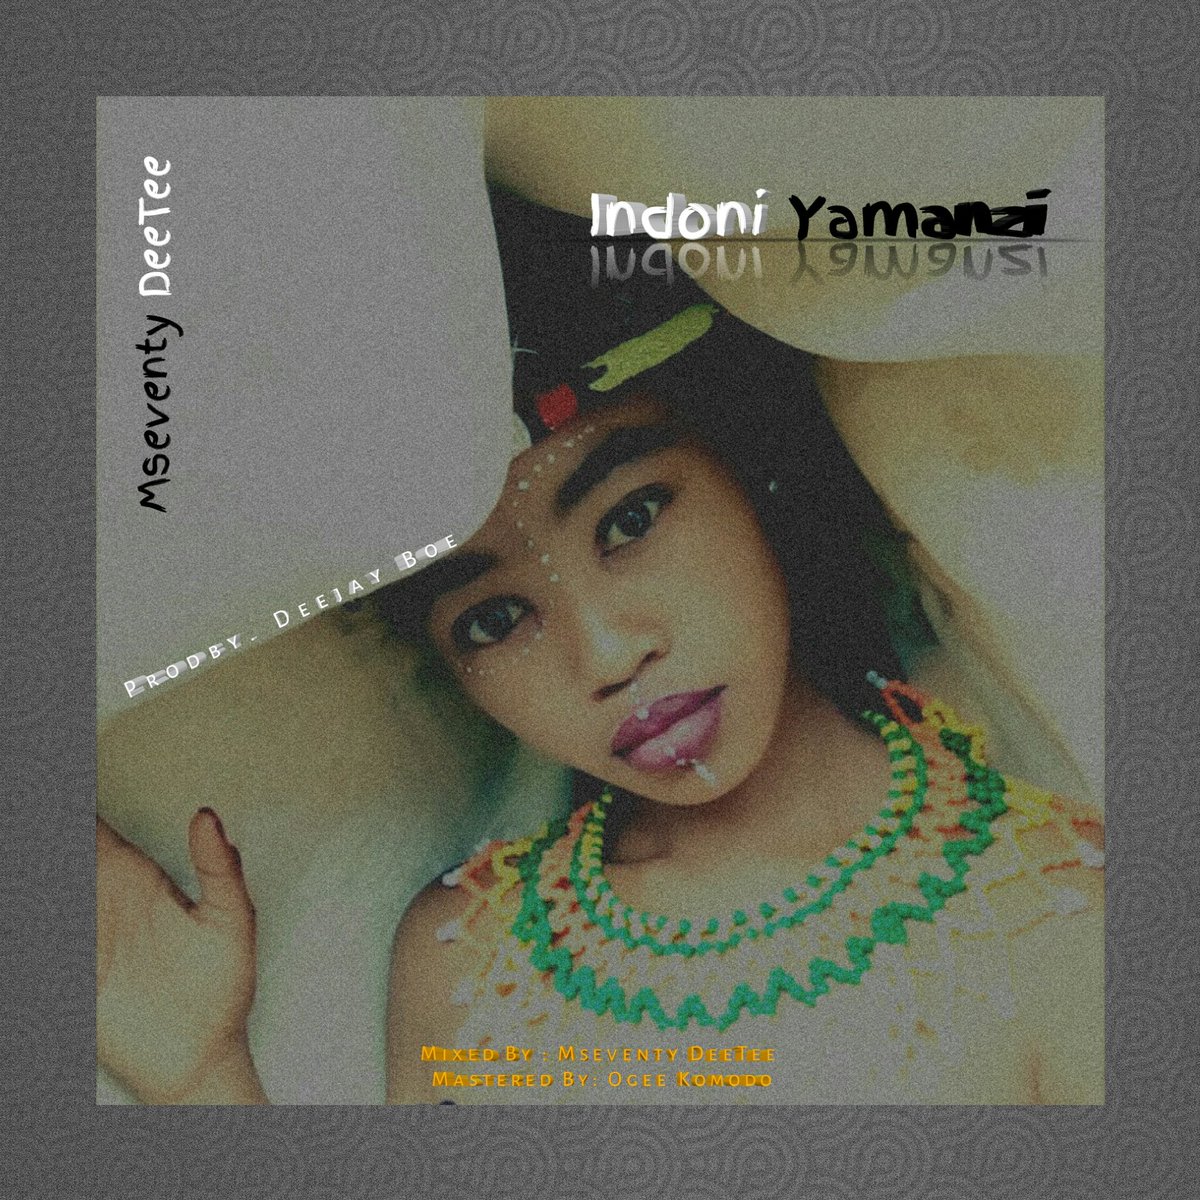 Mseventy DeeTee - Indoni Yamanzi 17